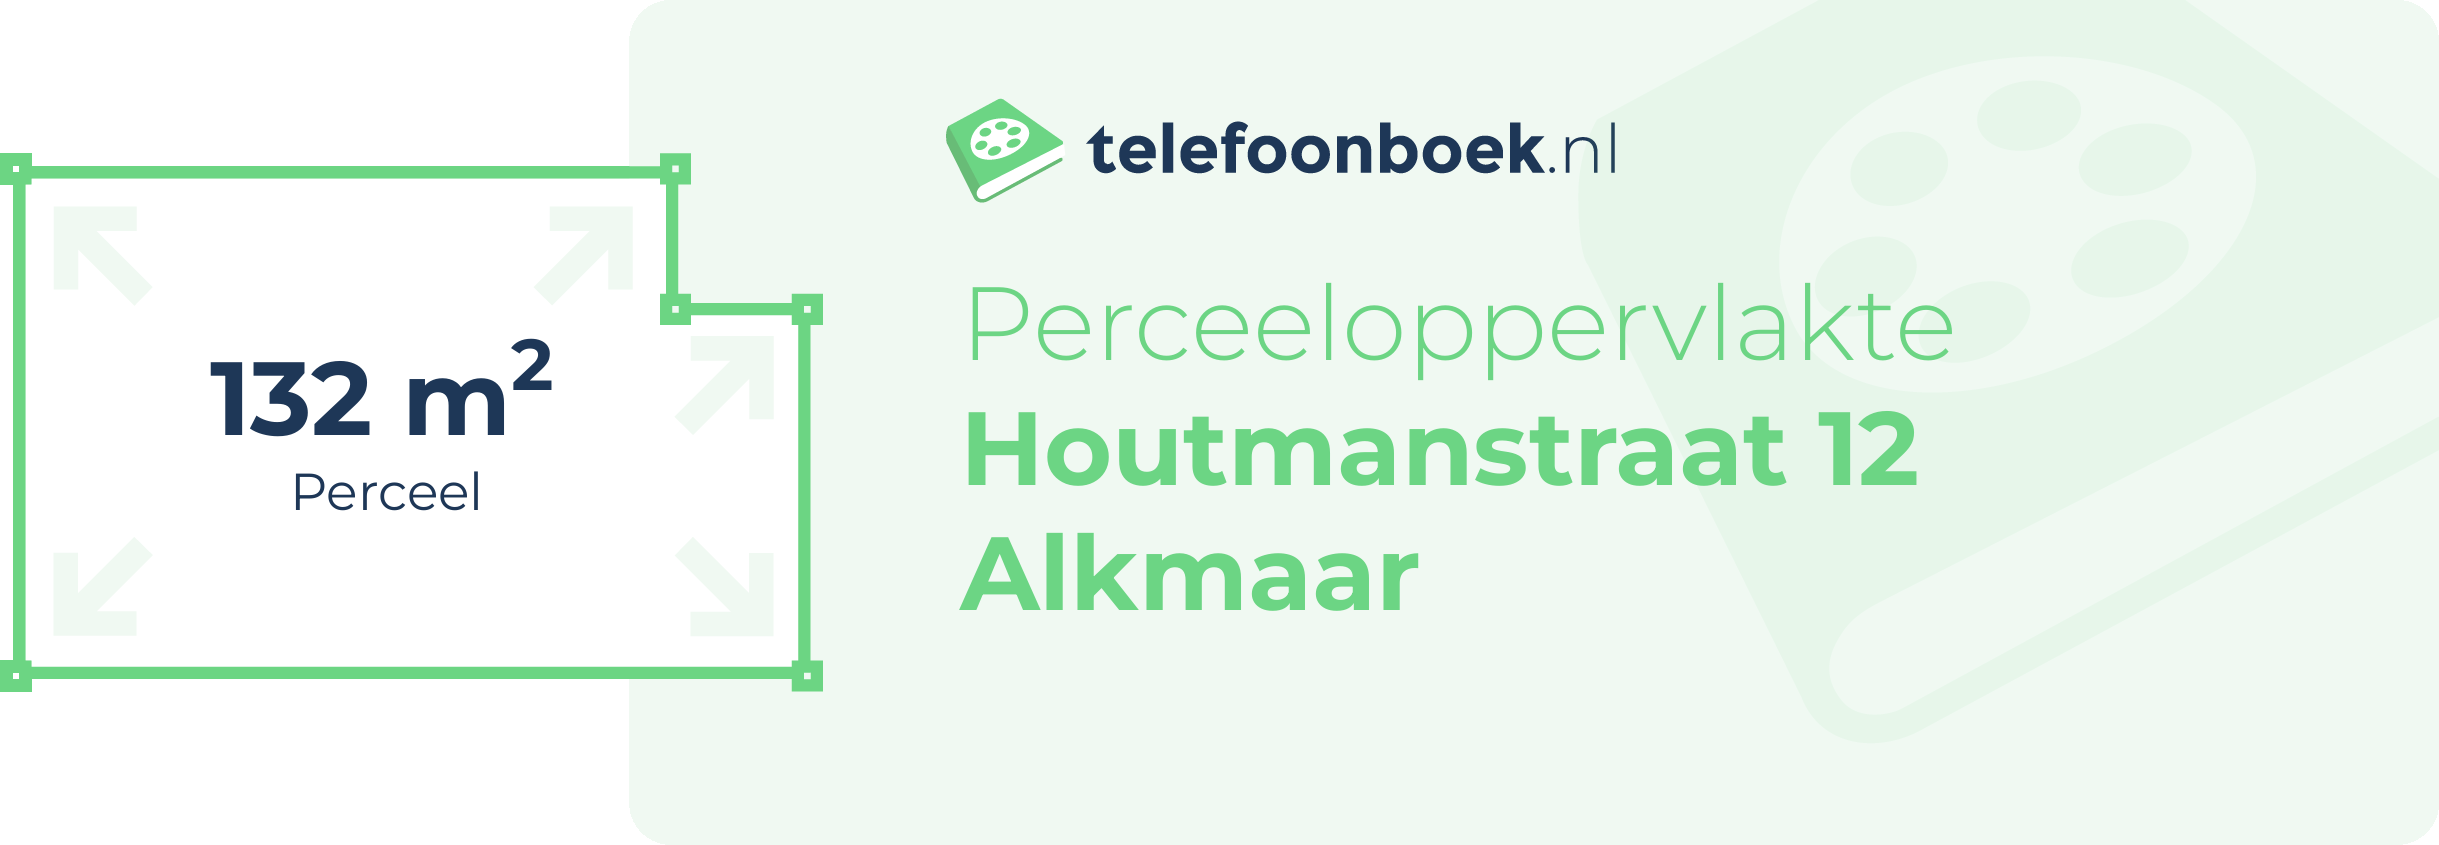 Perceeloppervlakte Houtmanstraat 12 Alkmaar